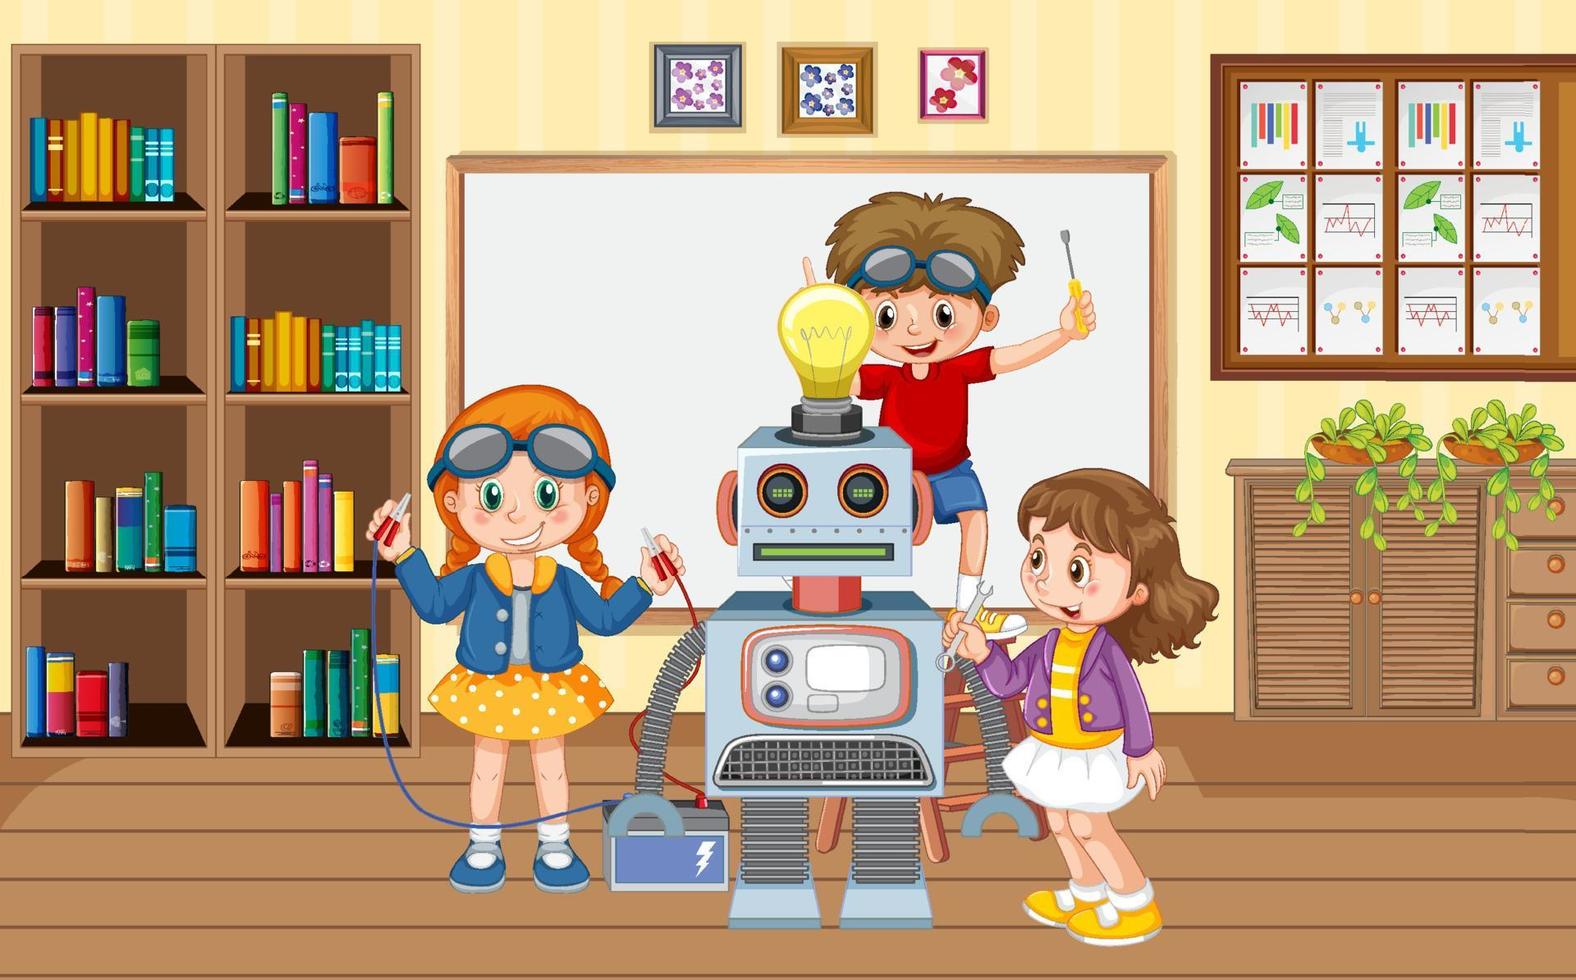 bambini che fissano un robot insieme nella scena della stanza vettore